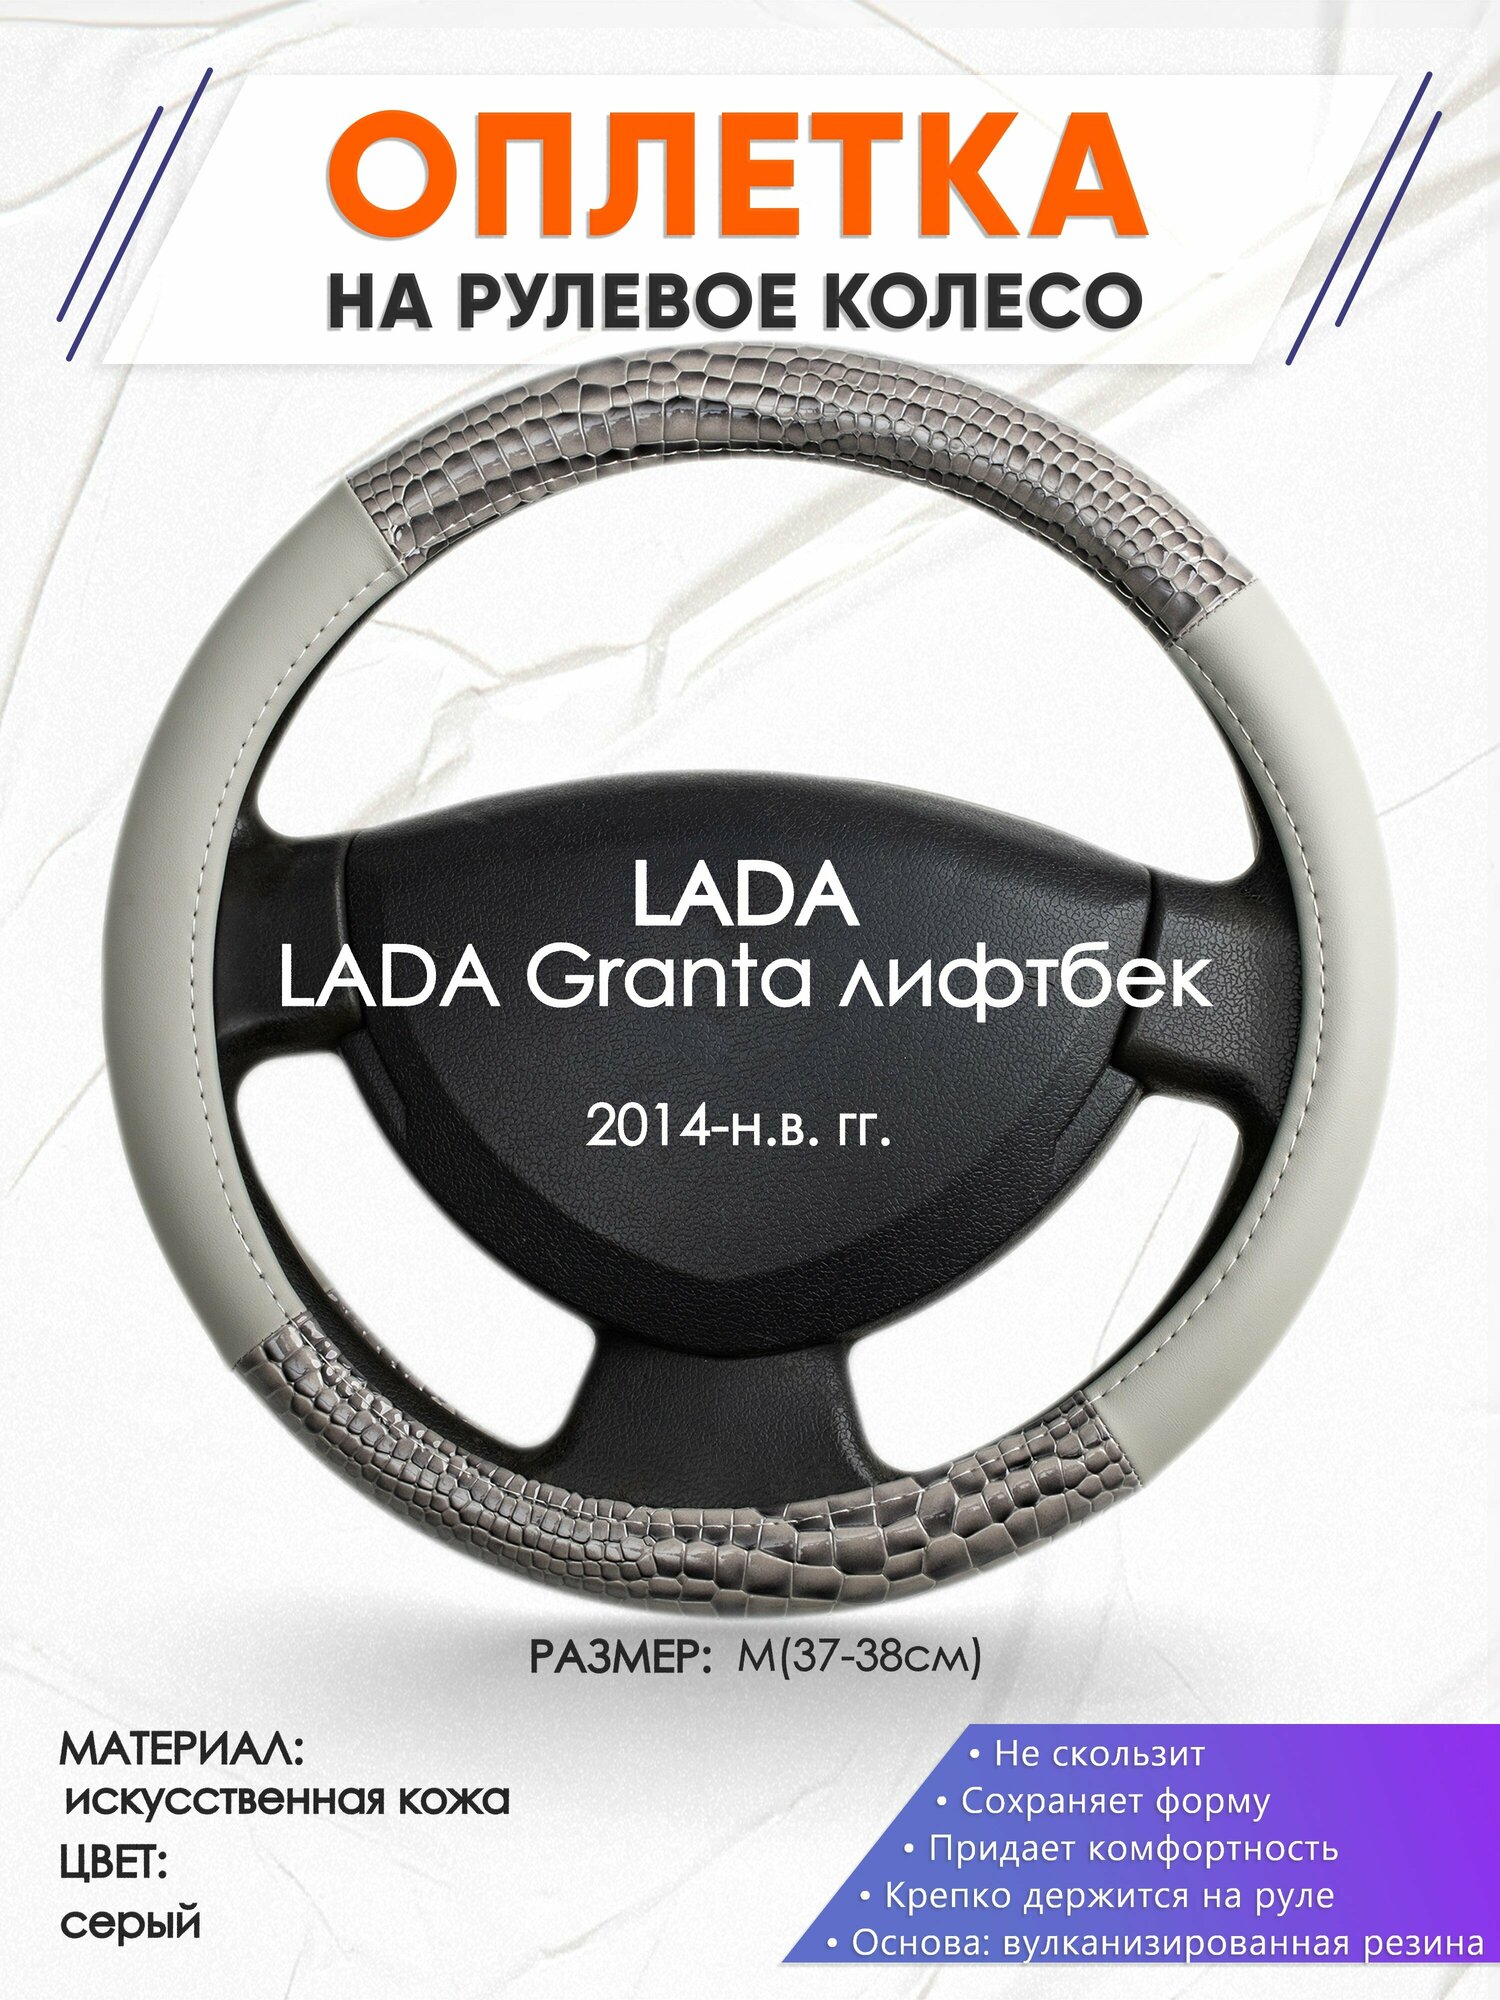 Оплетка наруль для LADA Granta лифтбек(Лада Гранта) 2014-н. в. годов выпуска, размер M(37-38см), Искусственная кожа 84